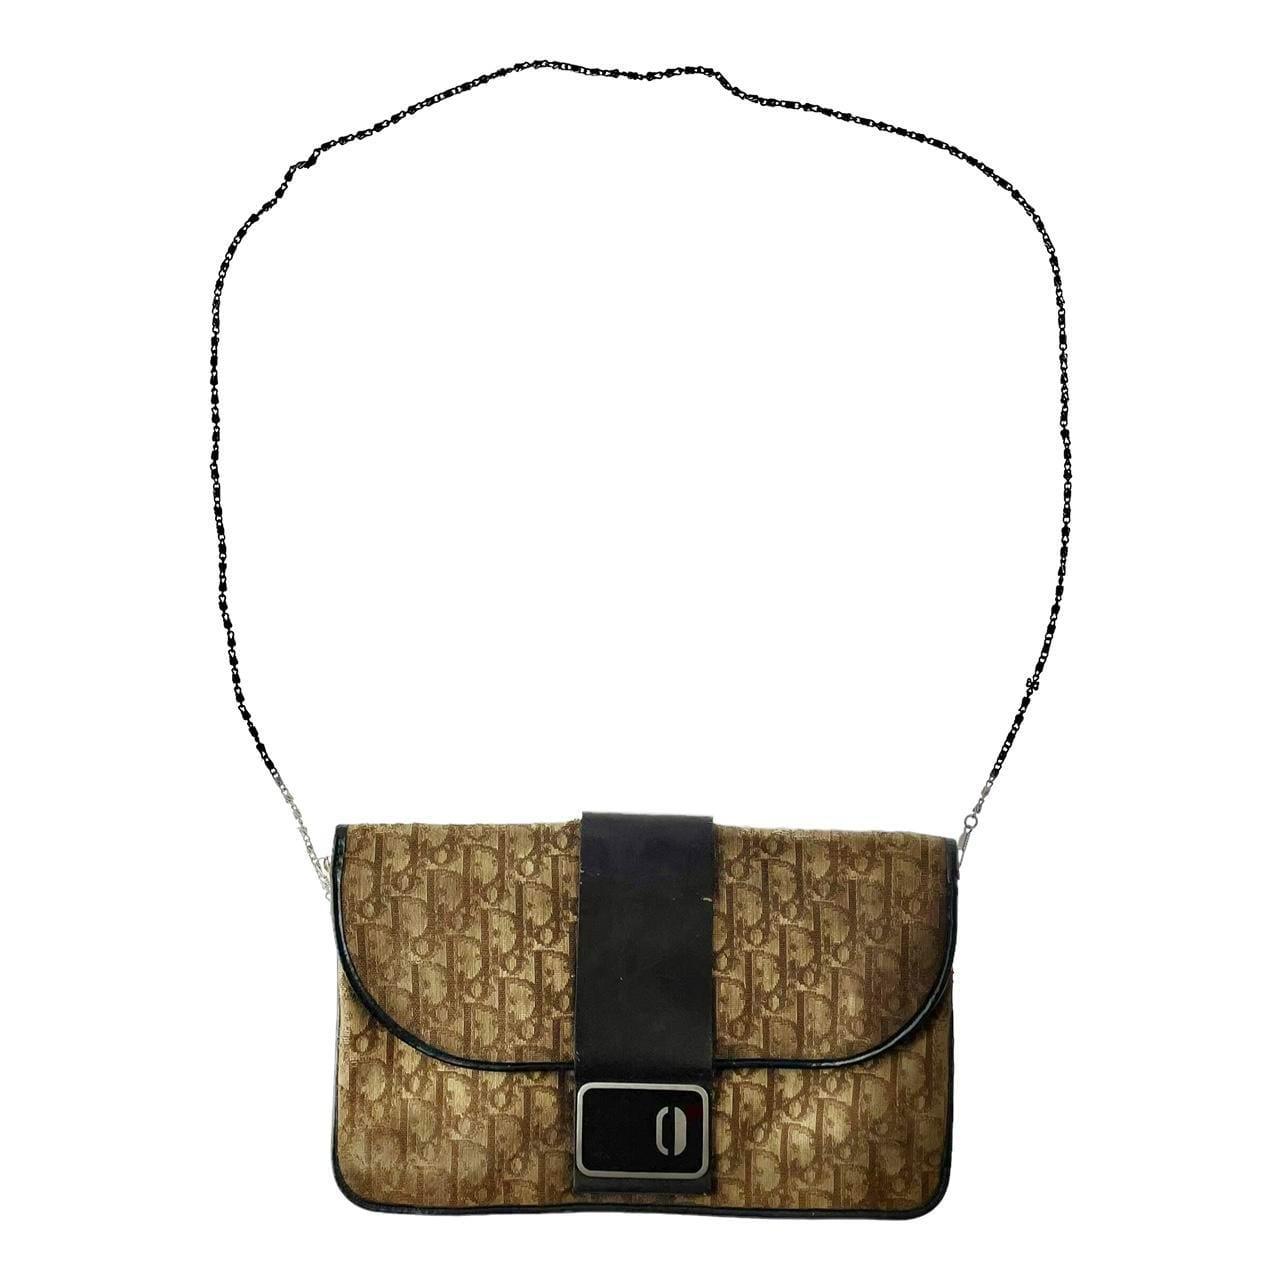 Vintage Dior monogram shoulder bag - Known Source